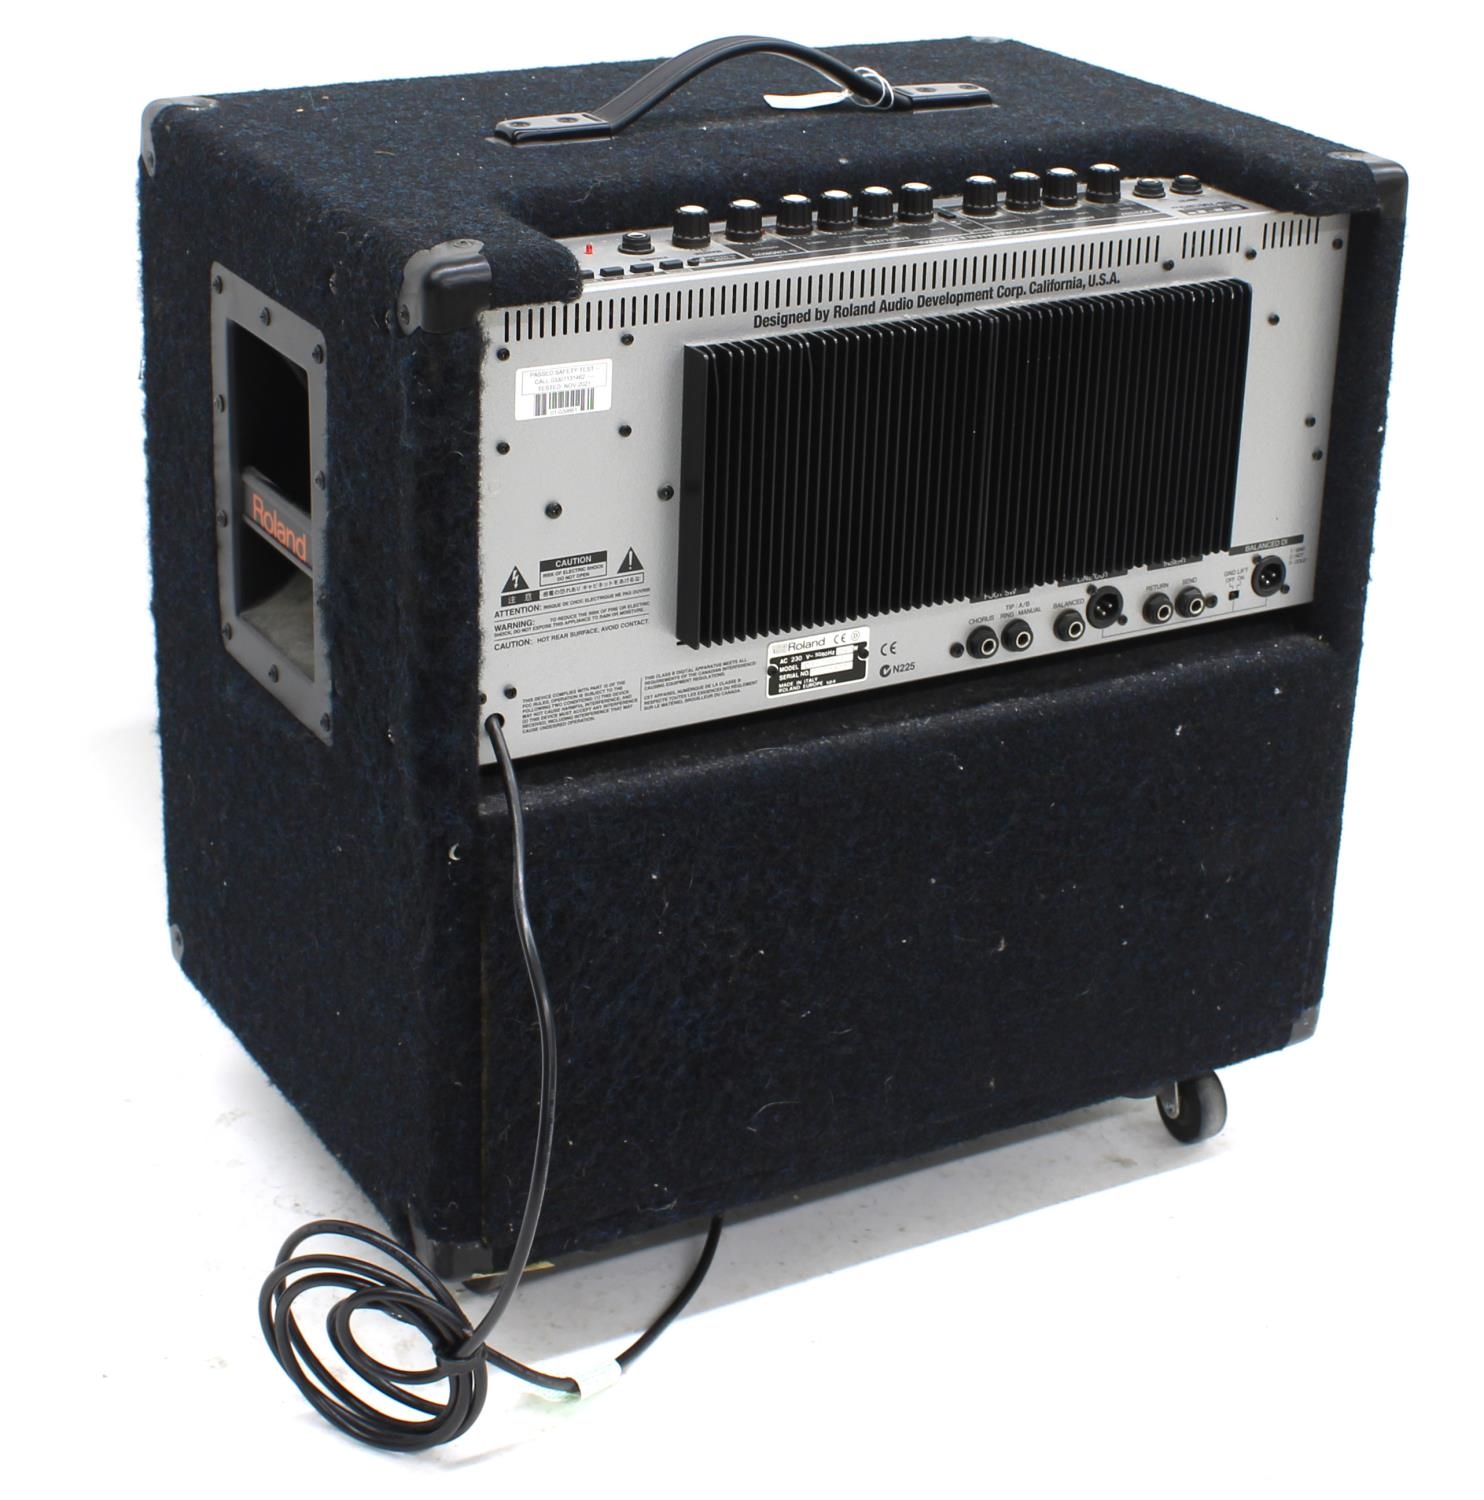 Roland DB-700 D-Bass guitar amplifier - Image 2 of 2